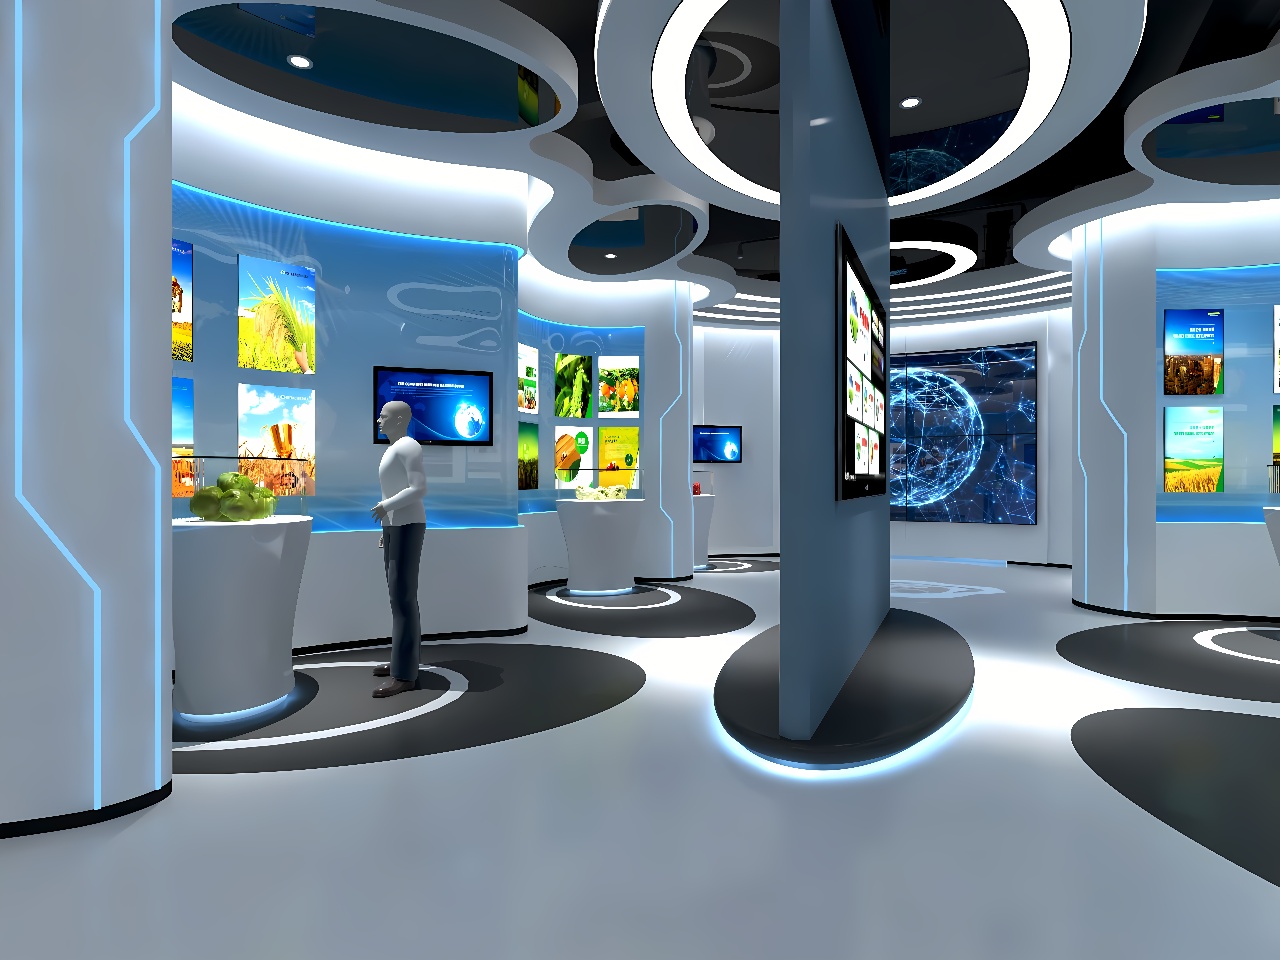 这是一张现代科技展览馆内部的图片，展示有多个互动屏幕和展示柜，色调以蓝白为主，空间设计现代感强。